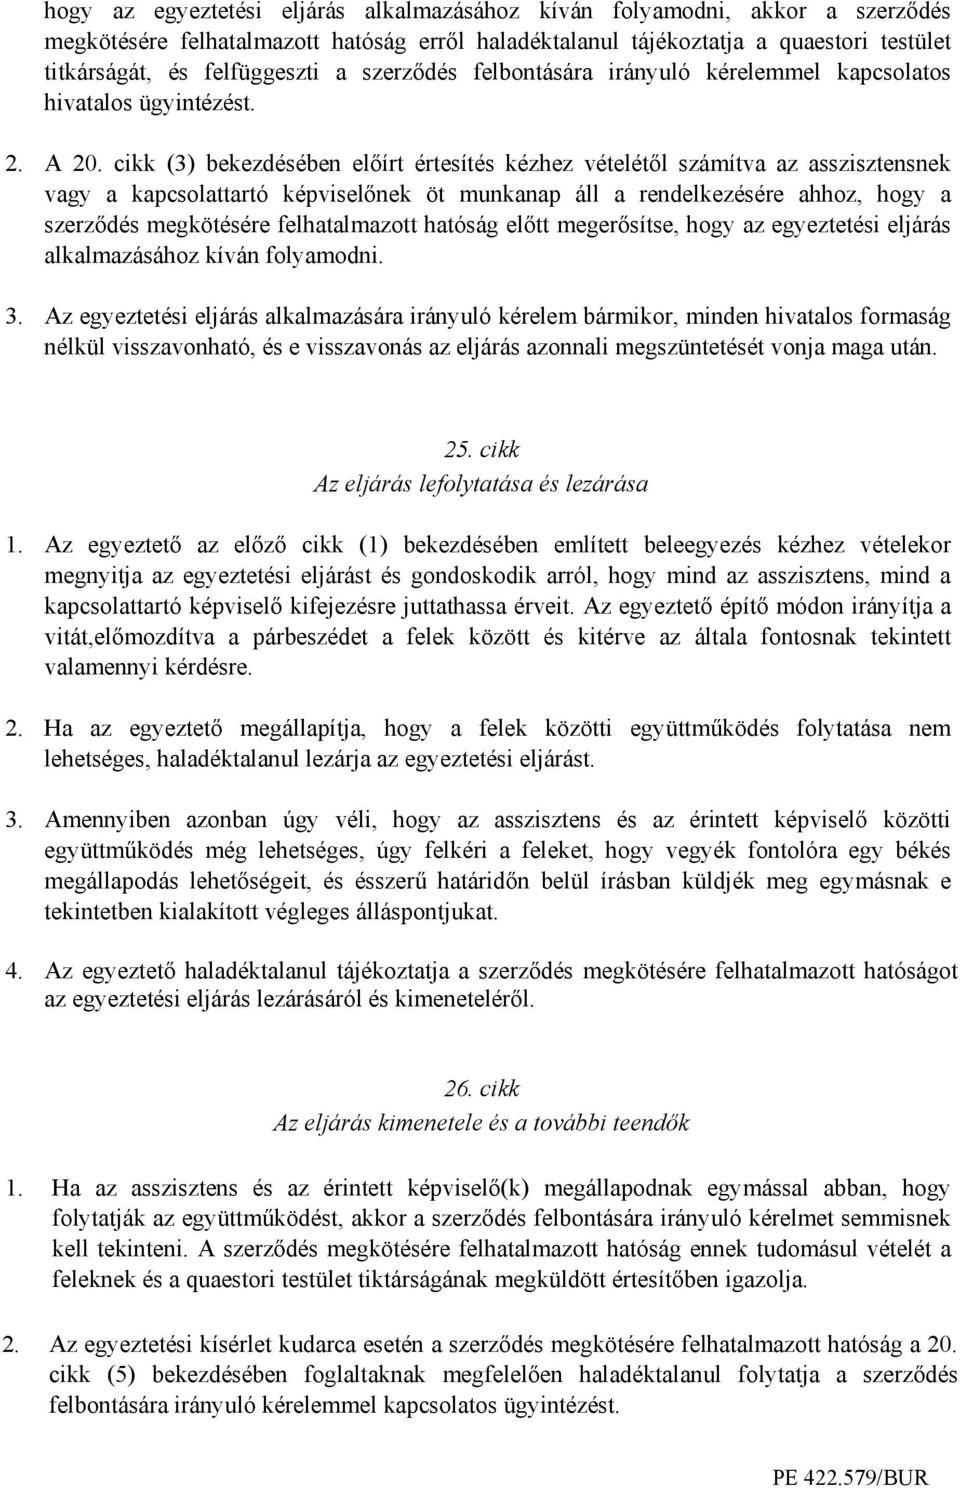 cikk (3) bekezdésében elıírt értesítés kézhez vételétıl számítva az asszisztensnek vagy a kapcsolattartó képviselınek öt munkanap áll a rendelkezésére ahhoz, hogy a szerzıdés megkötésére